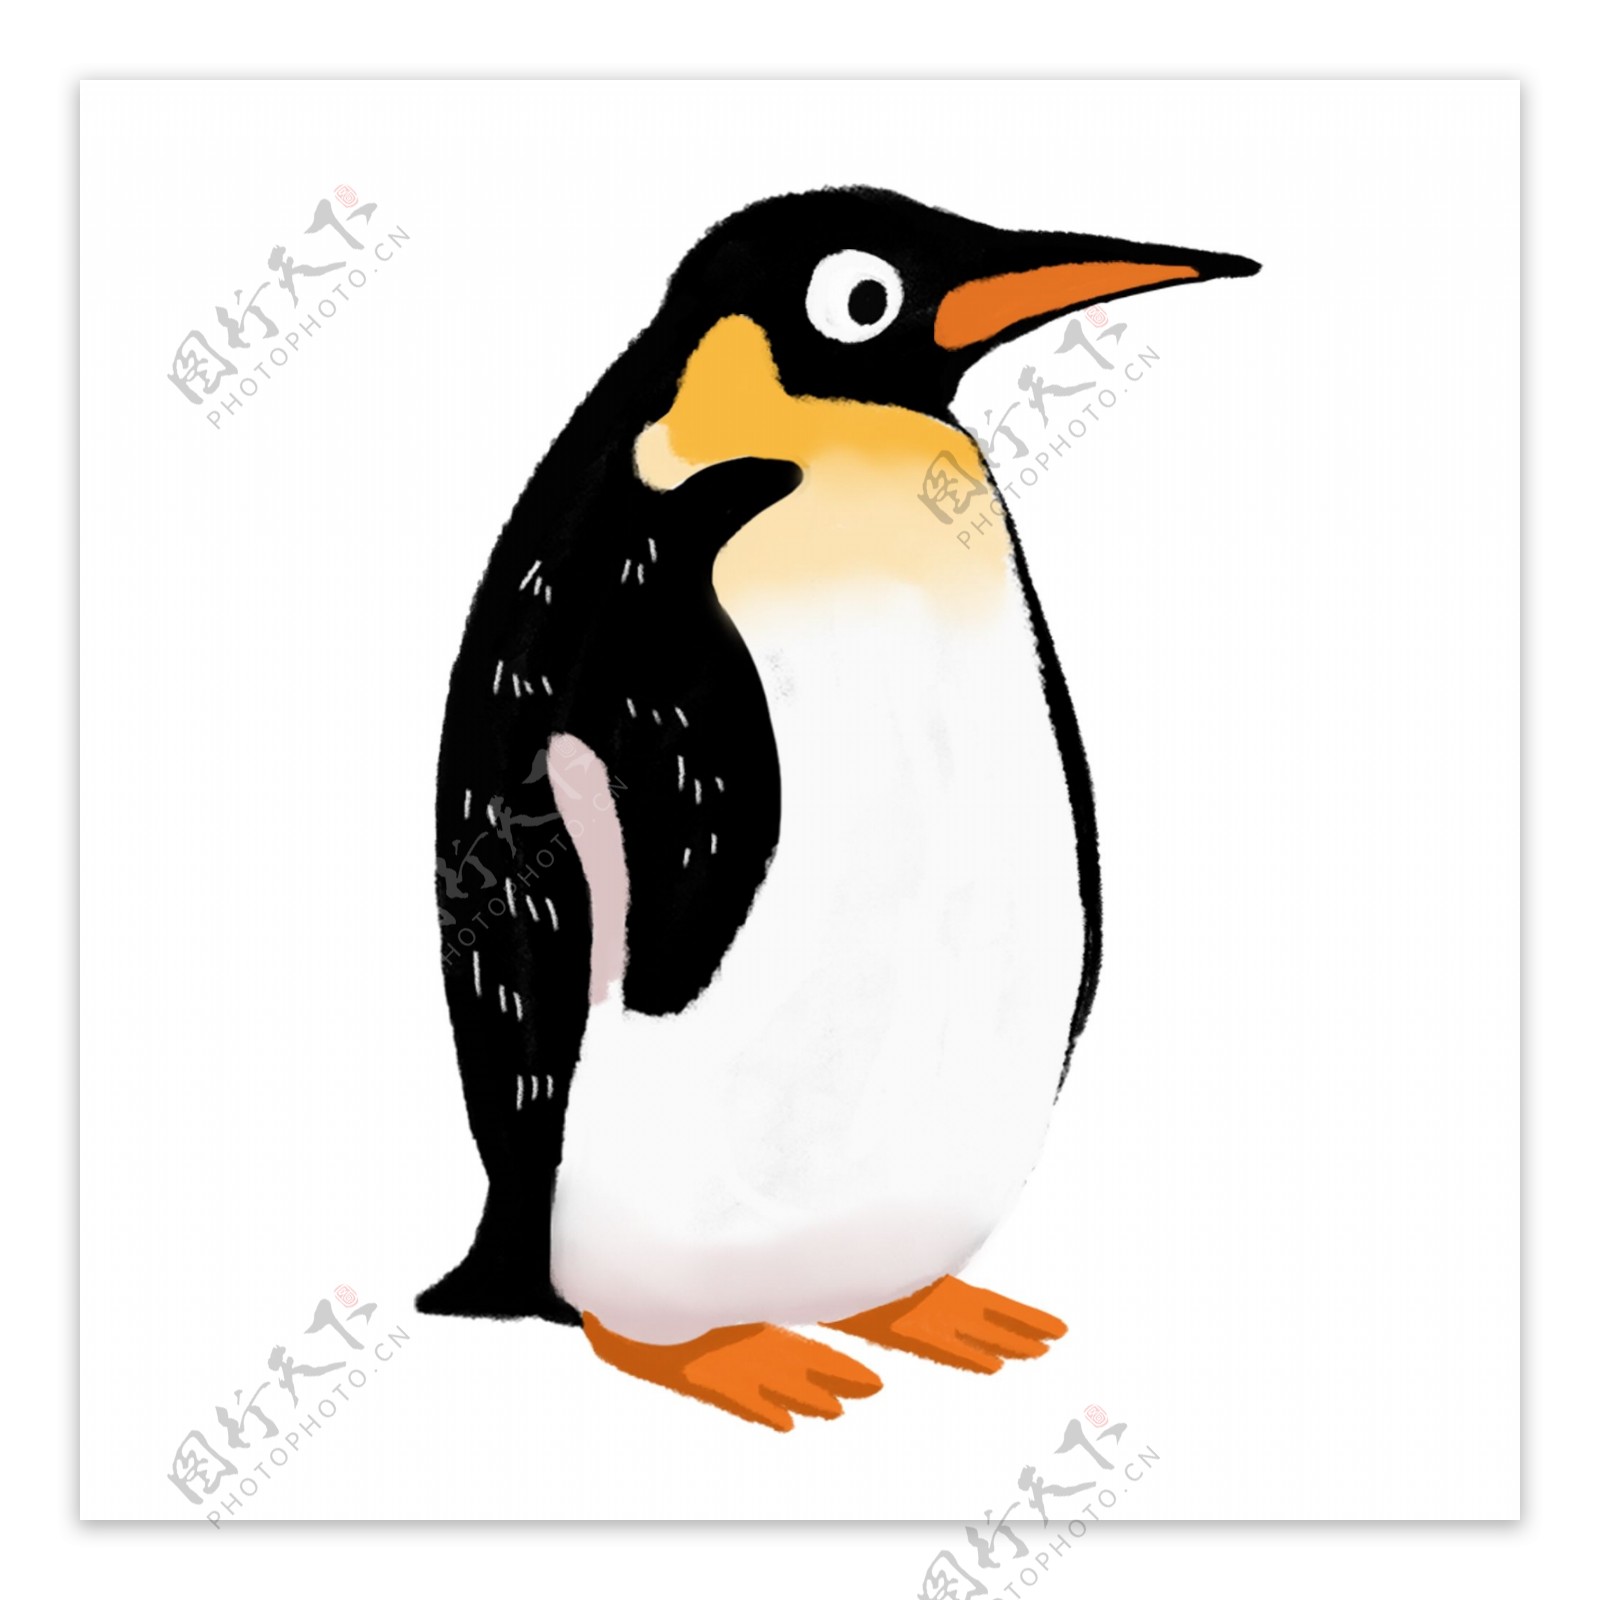 卡通动漫手绘动物企鹅